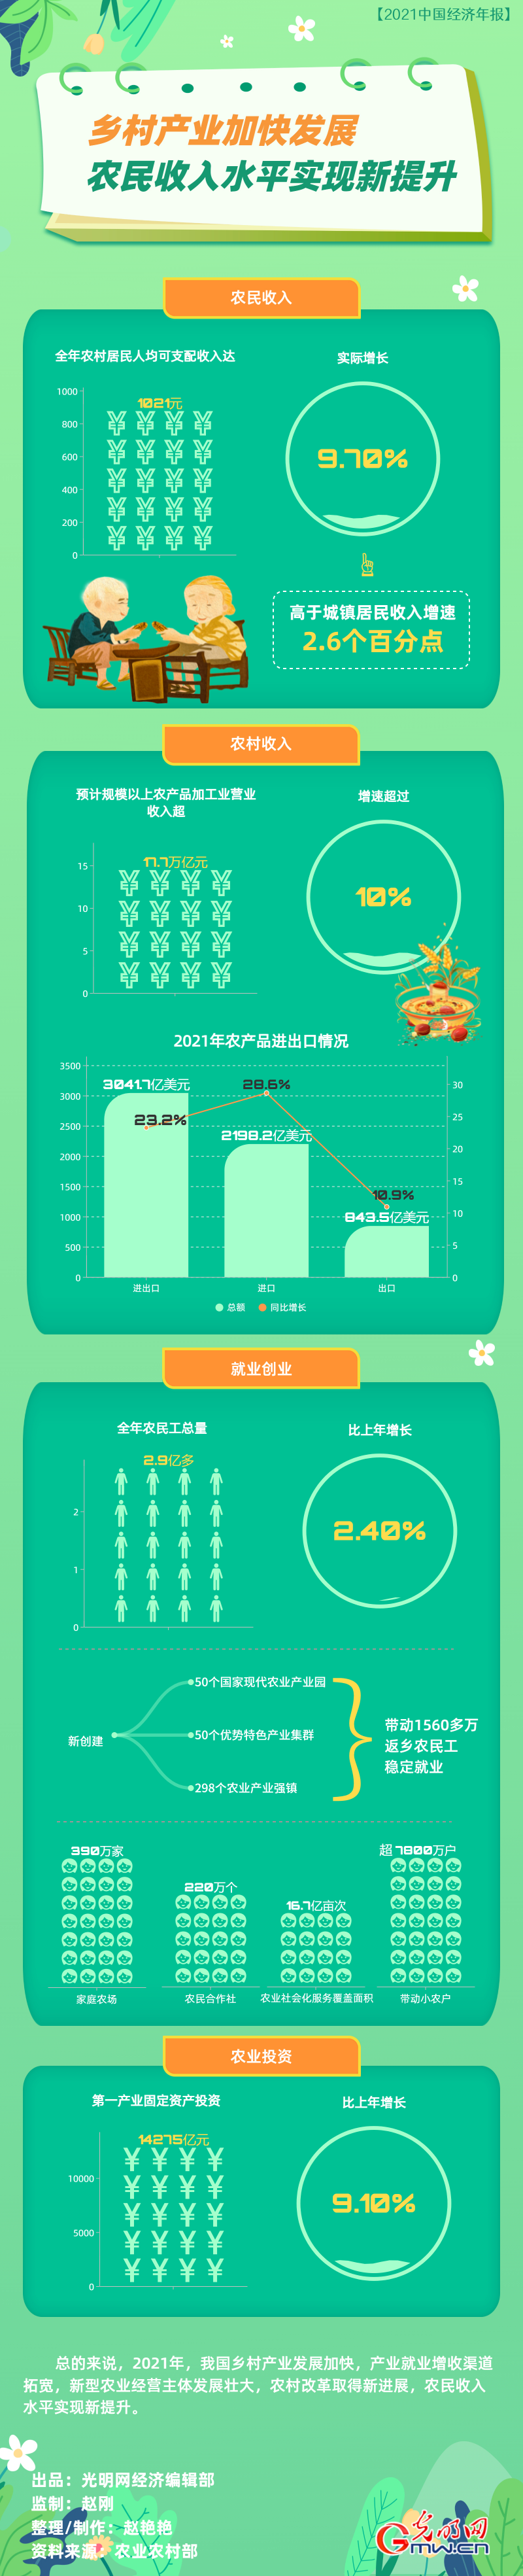 【2021中国经济年报】乡村产业加快发展 农民收入水平实现新提升